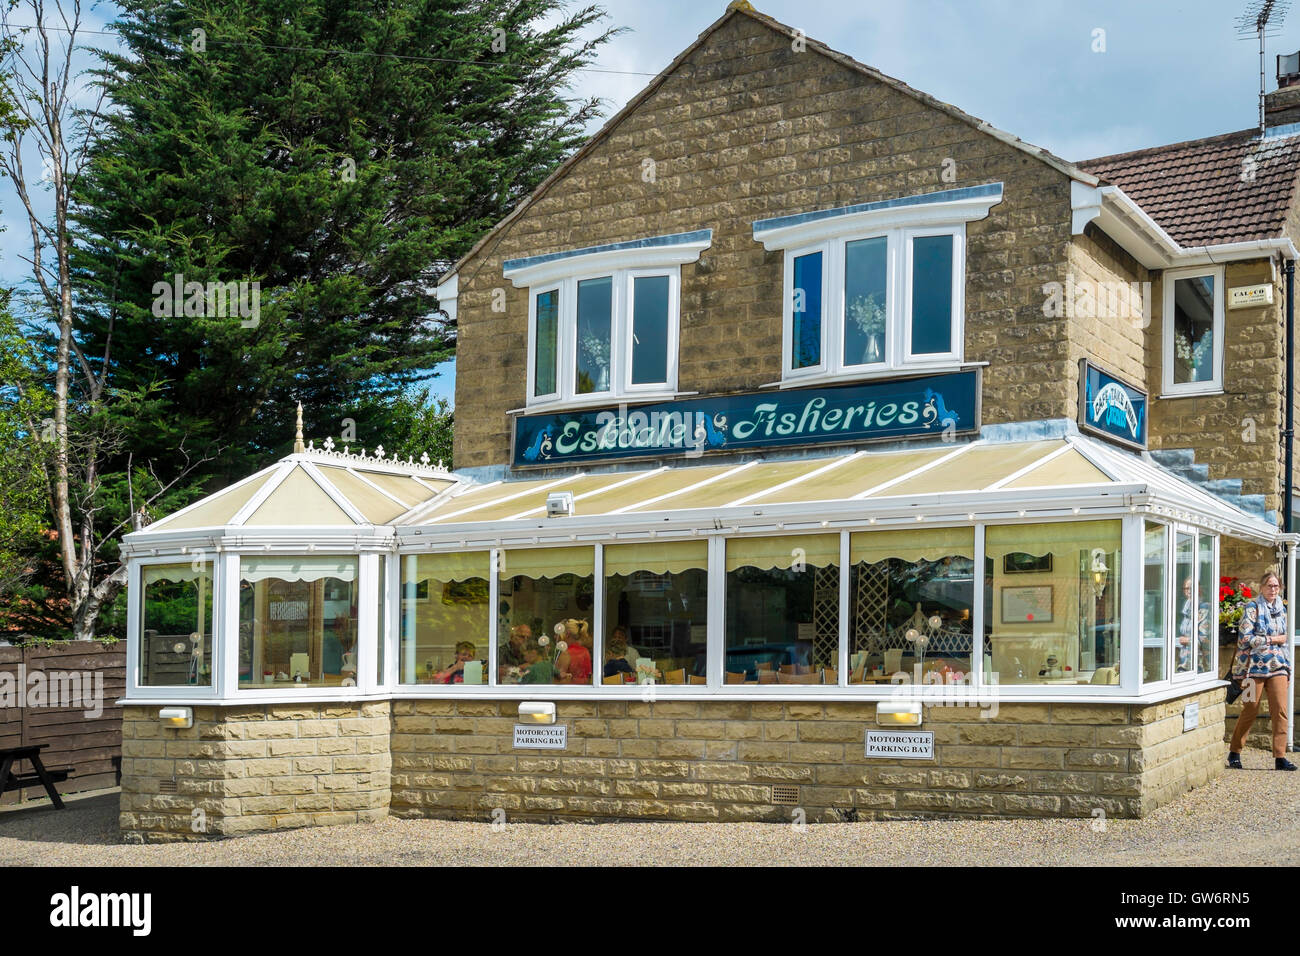 Les poissons et les pêches Eskdale Chip shop et restaurant à tours près de Whitby, North Yorkshire Angleterre Banque D'Images